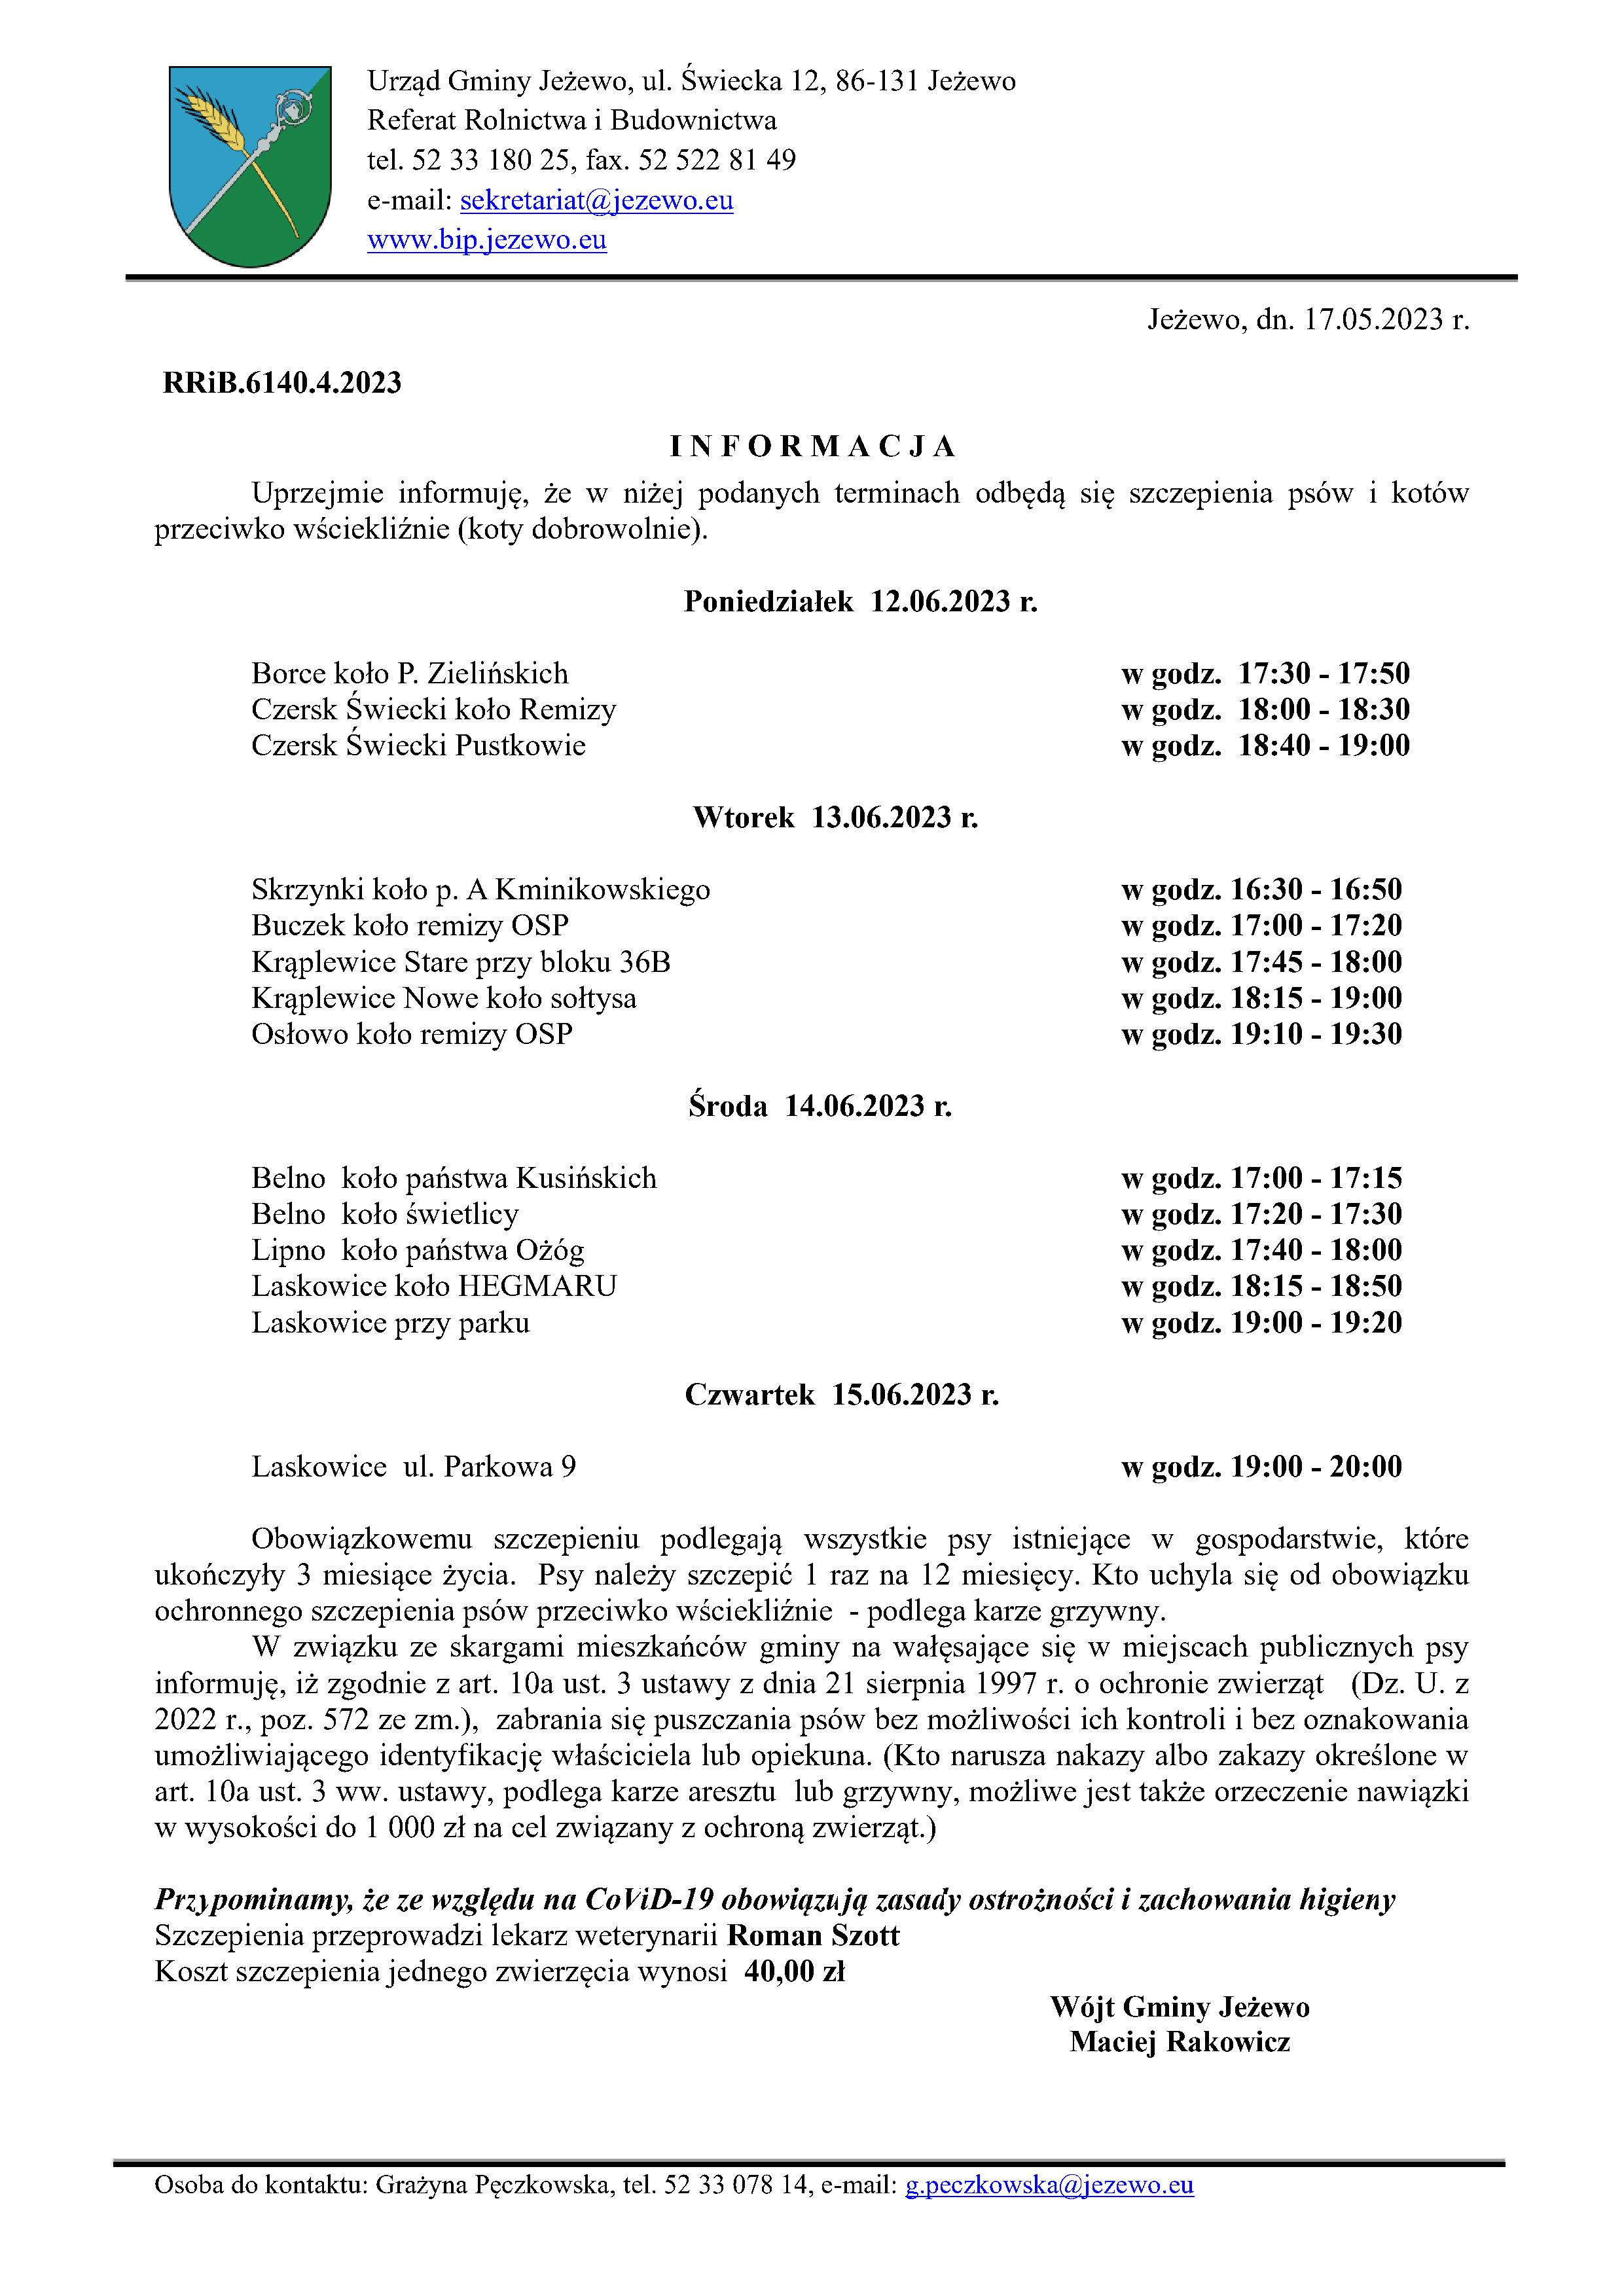 Informacja w sprawie szczepienia psów i kotów 12-15.06.2023 r.